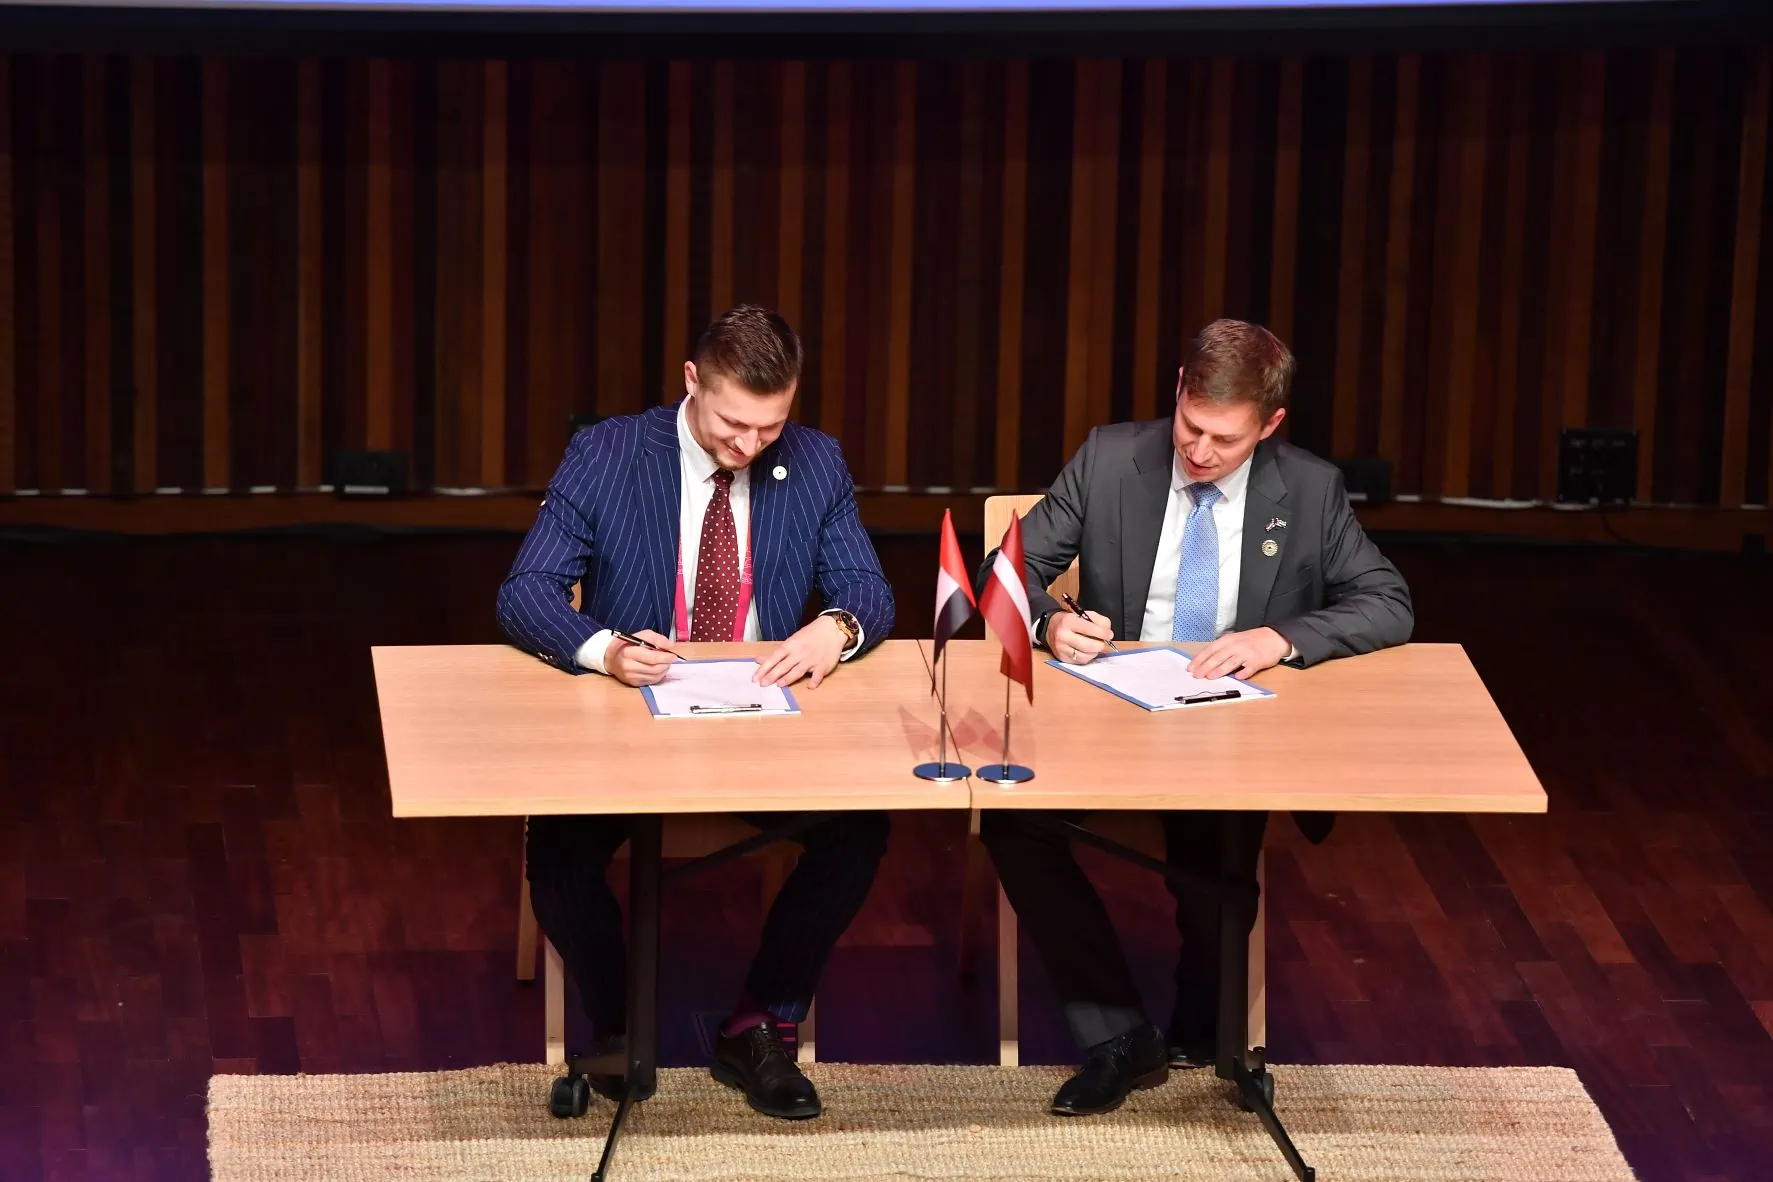 Noslēgts sadarbības līgums starp LIAA un Rīgas investīciju un tūrisma aģentūru